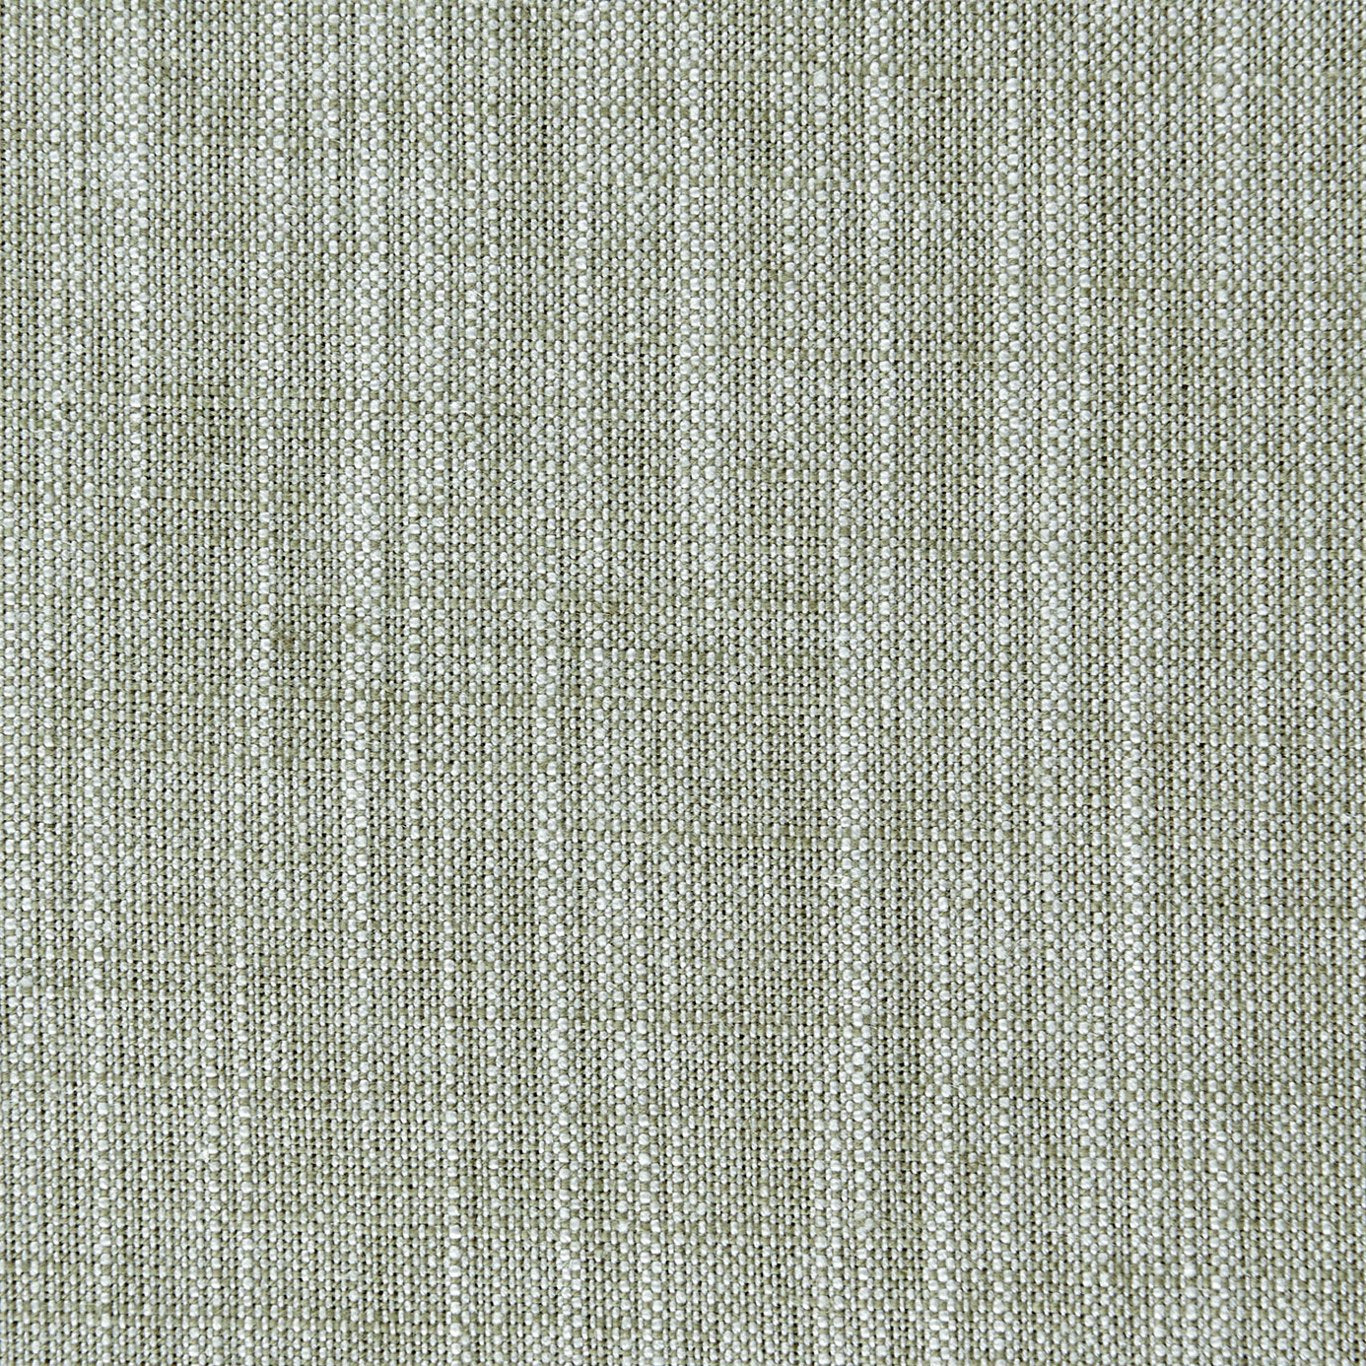 Biarritz Fabric by Clarke & Clarke - F0965/15 - Eau De Nil